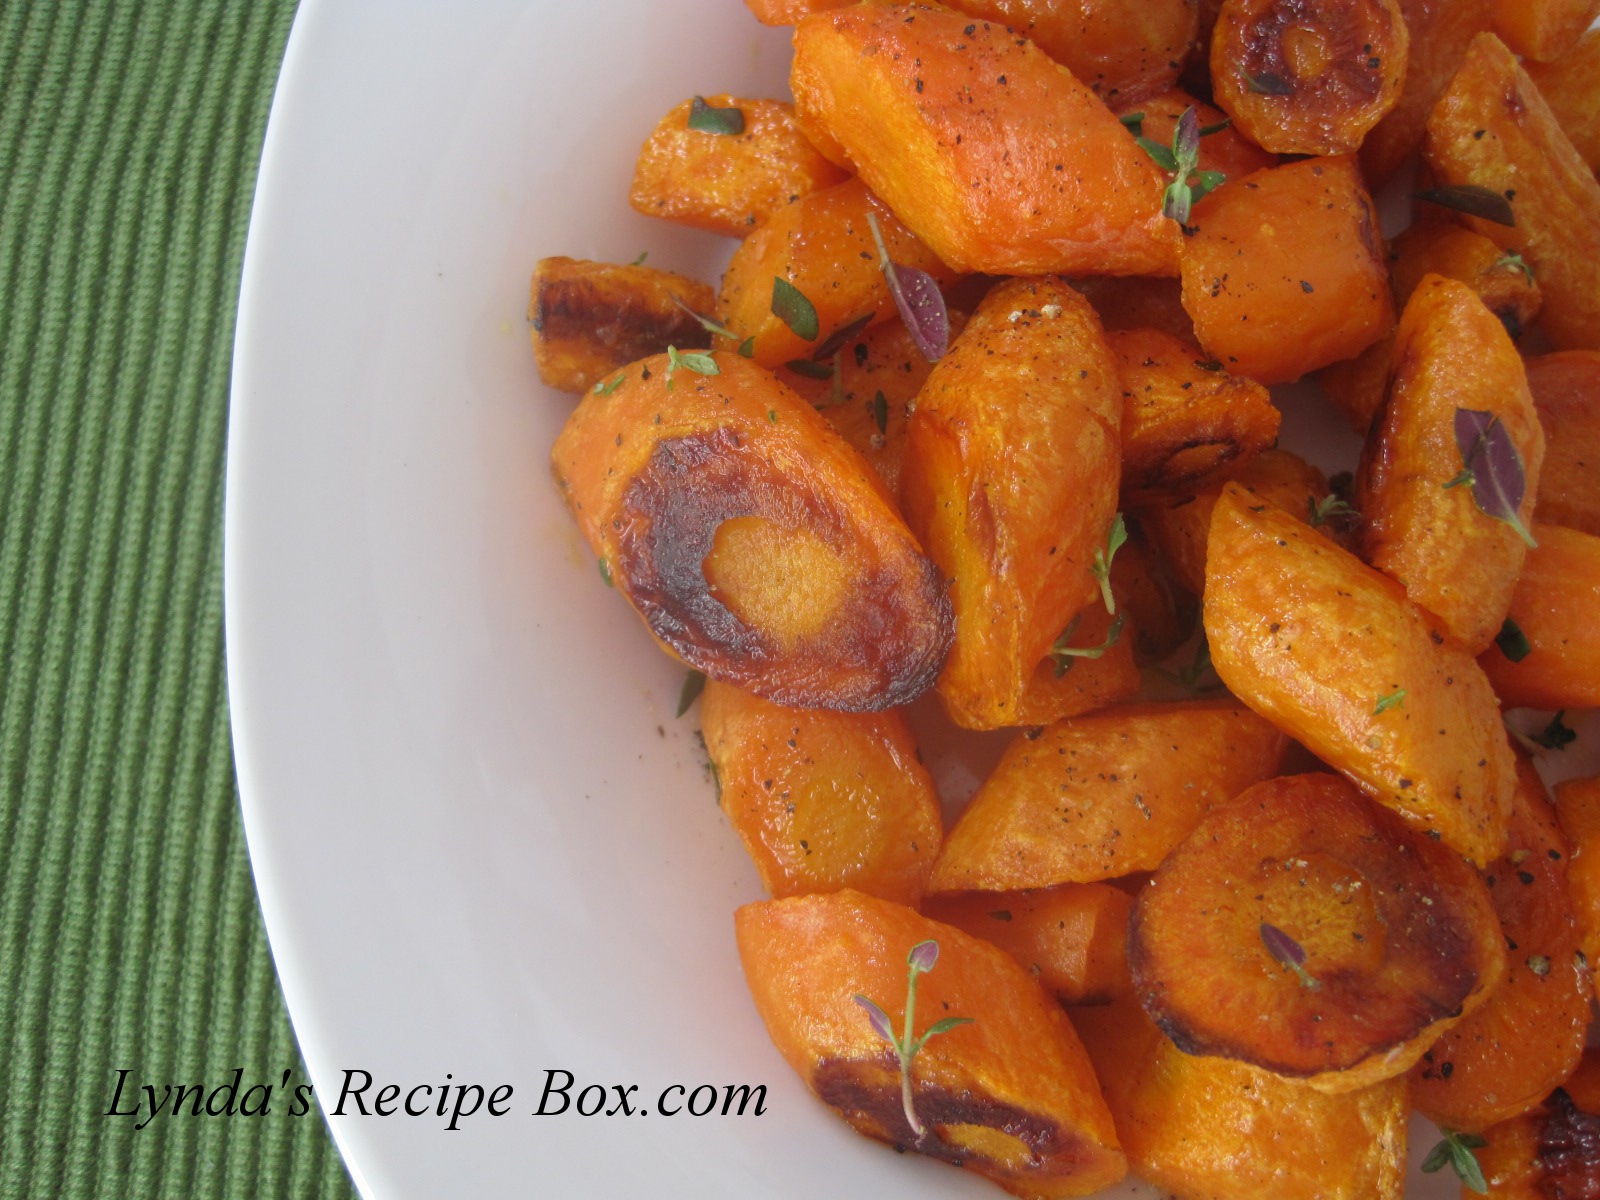 Lynda's Recipe Box: Oven Roasted Carrots